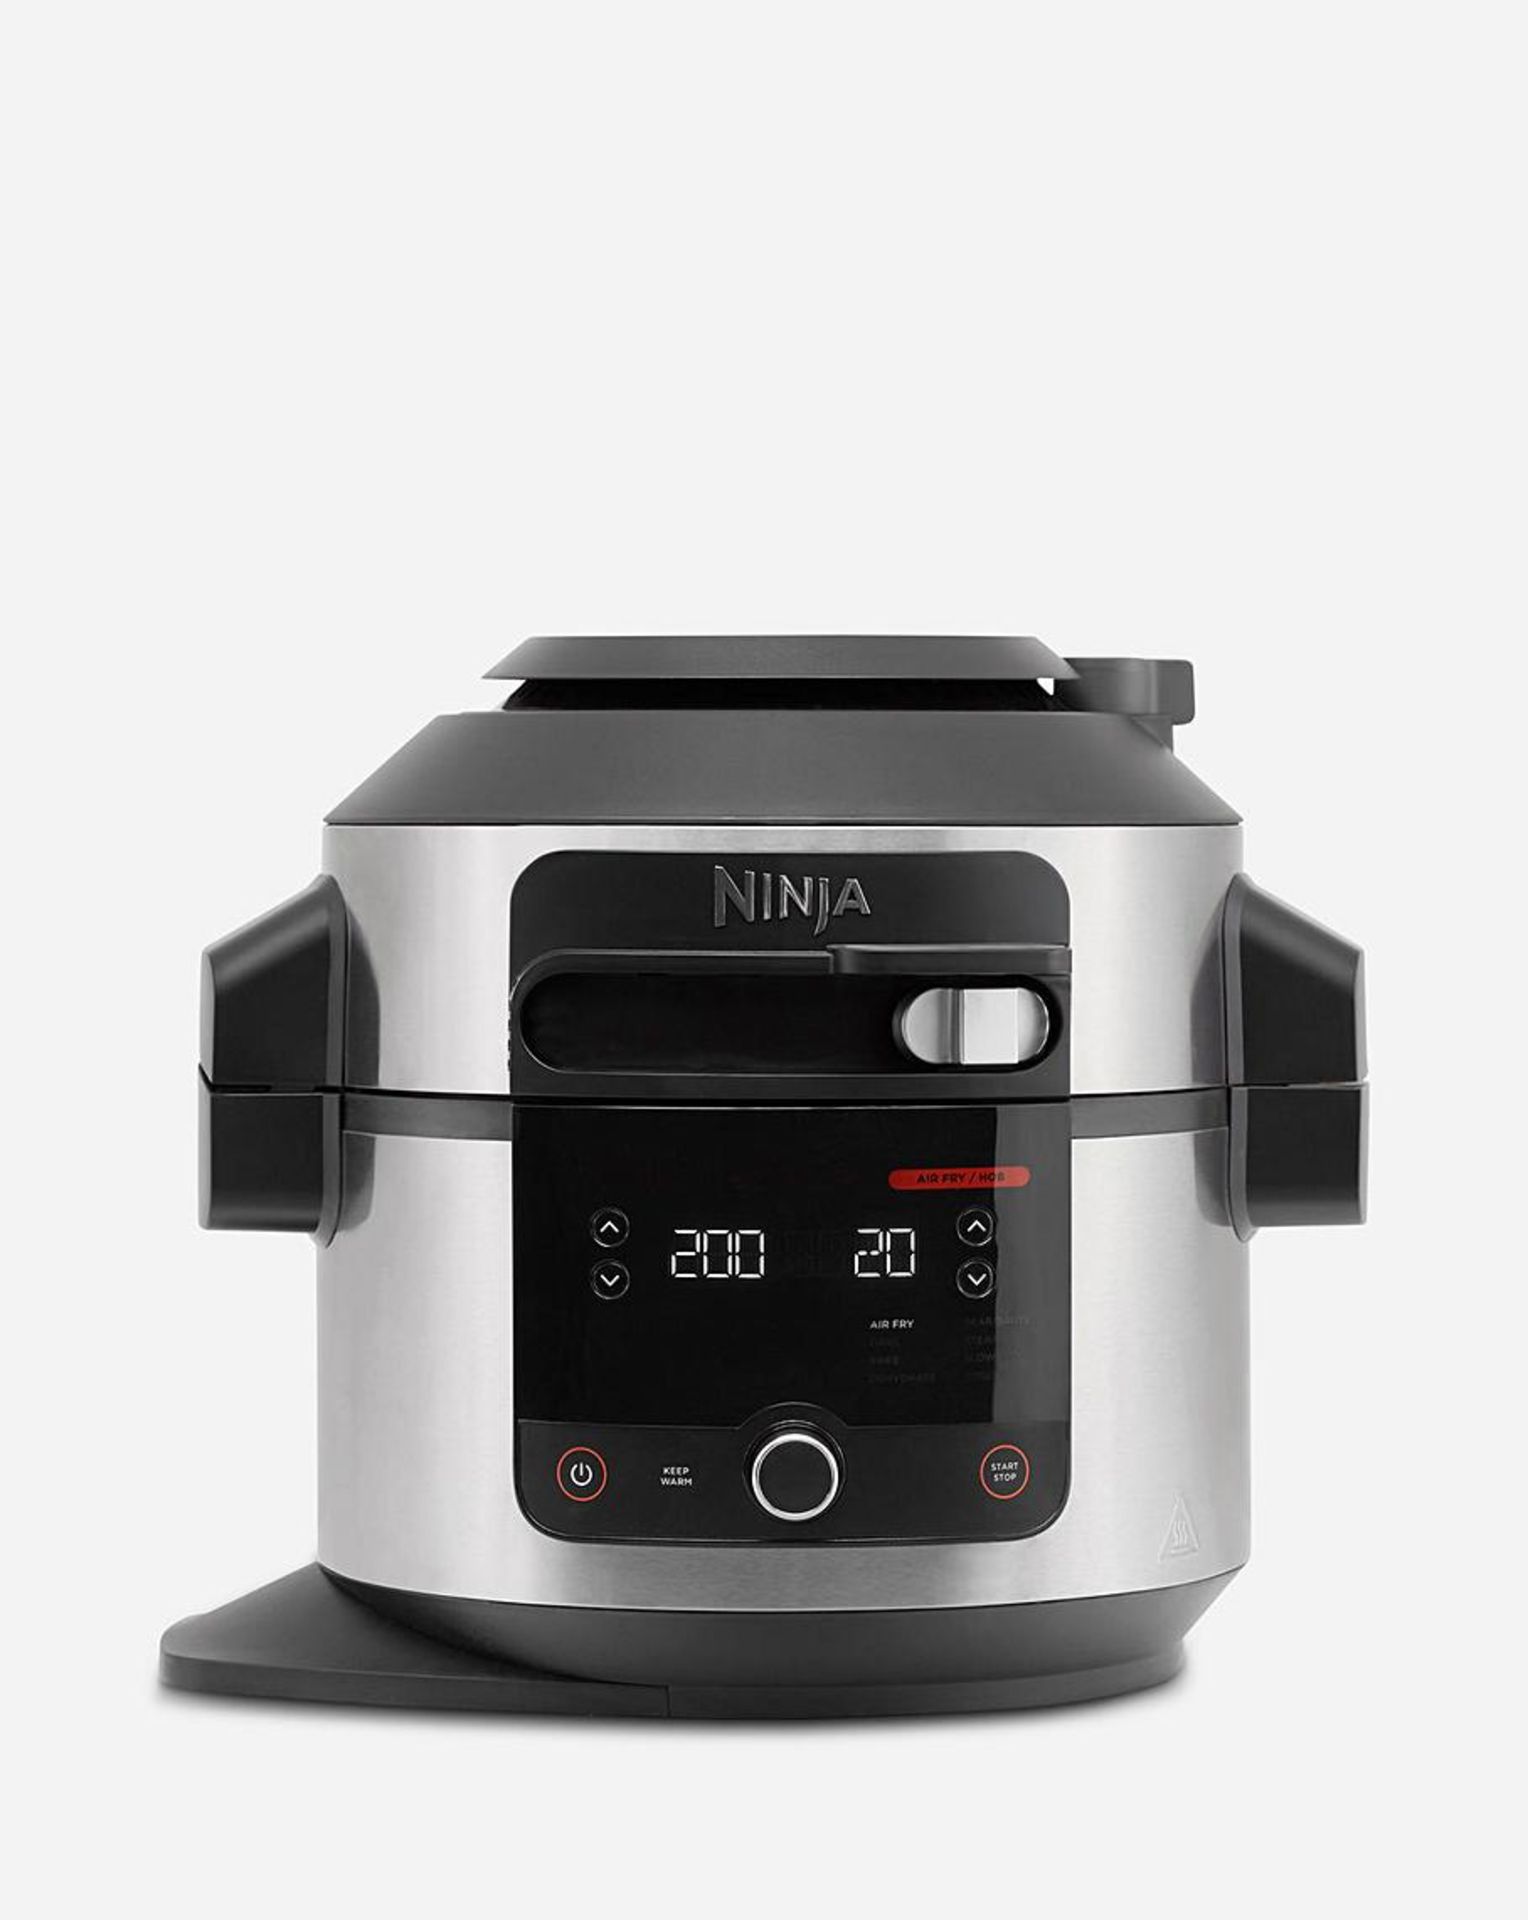 Ninja Foodi 6L Air Fryer 11-in-1 SmartLid Multi-Cooker. RRP £299.99. - SR4. Unlock 11 cooking